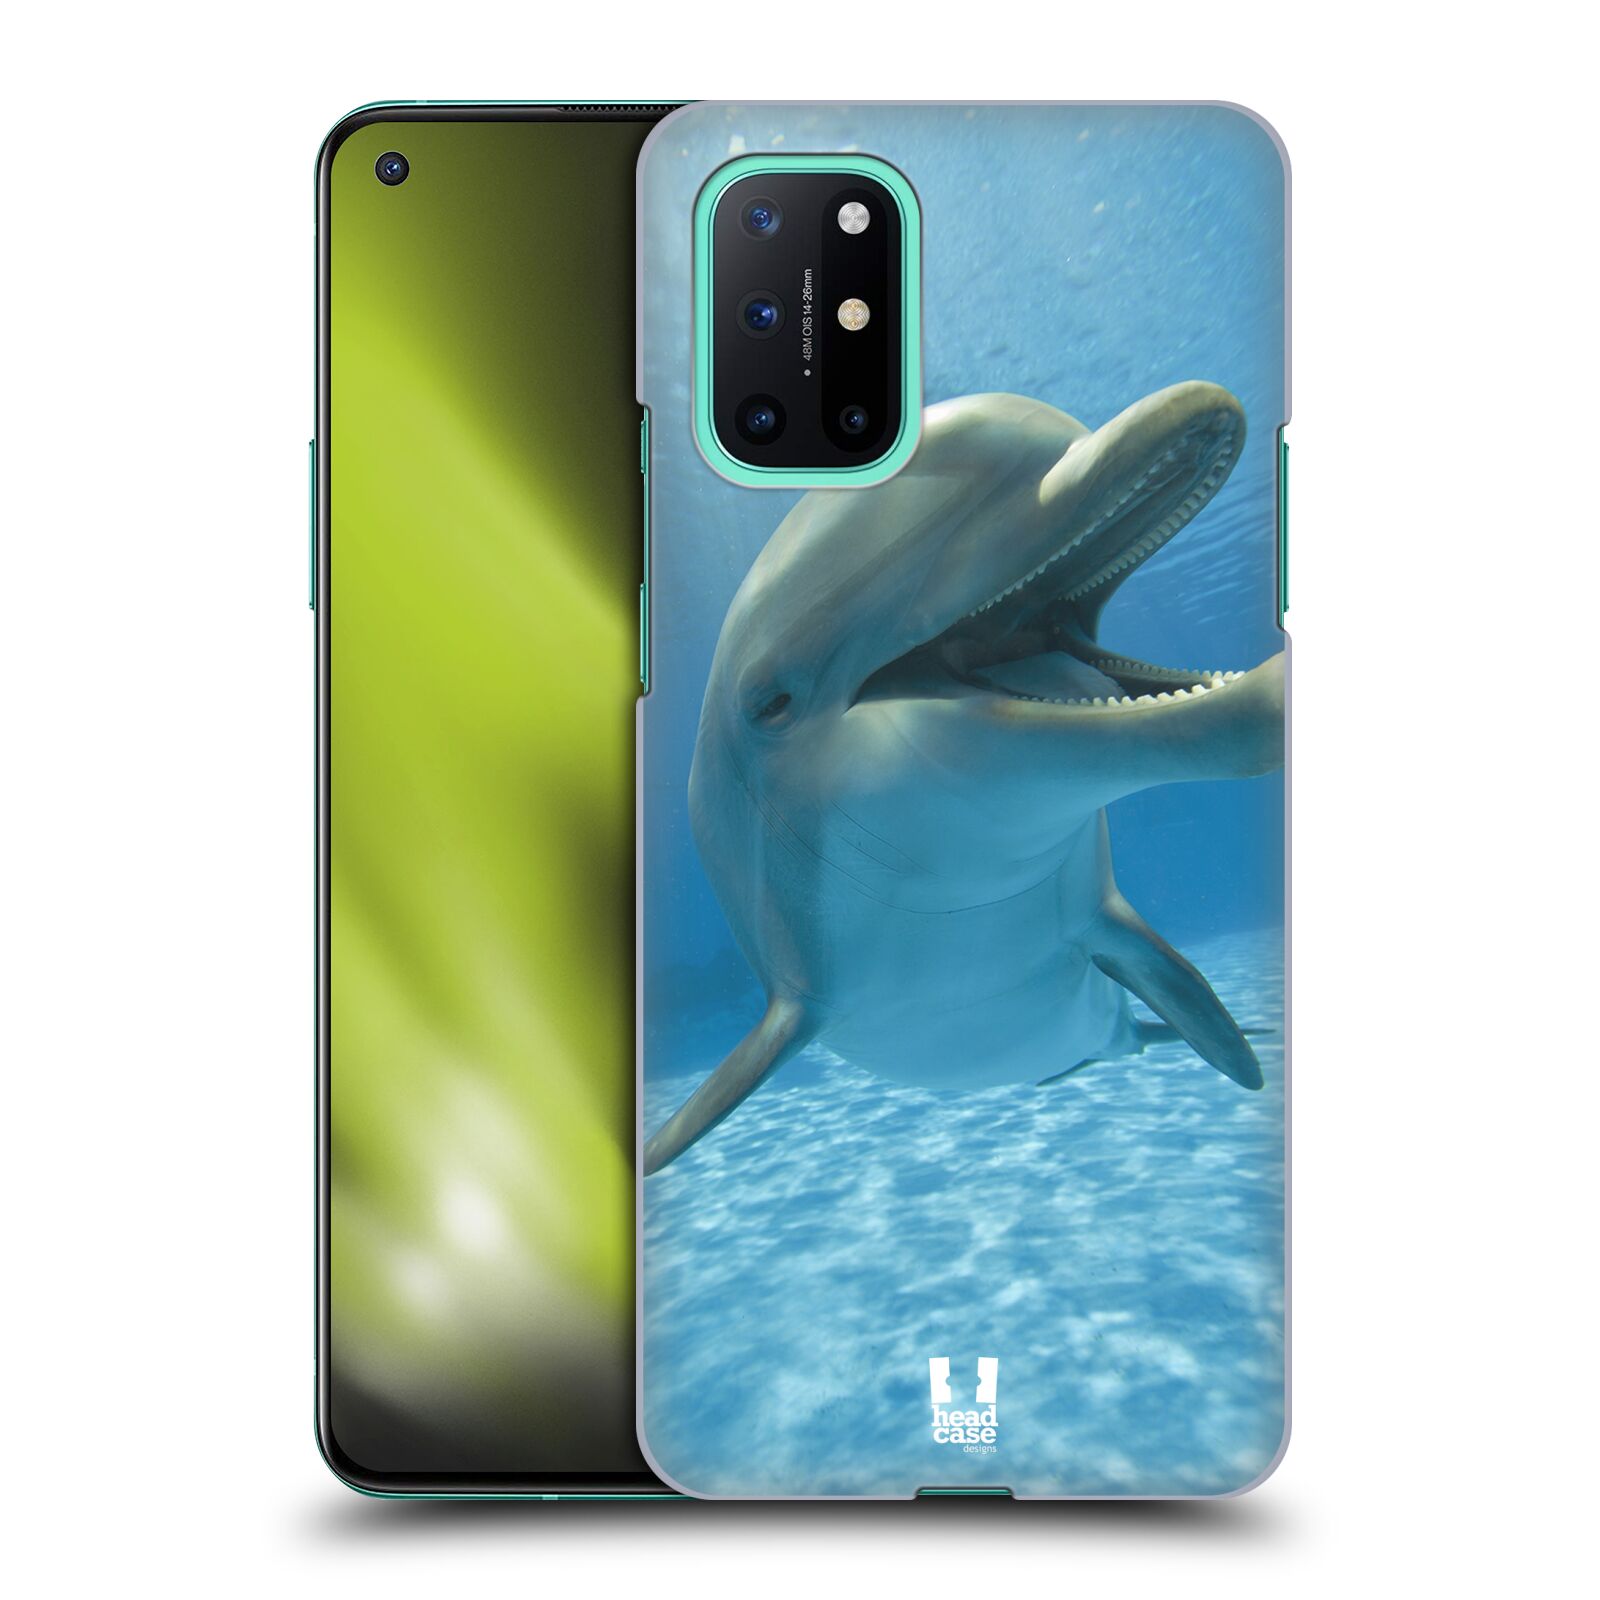 Zadní obal pro mobil OnePlus 8T - HEAD CASE - Svět zvířat delfín v moři